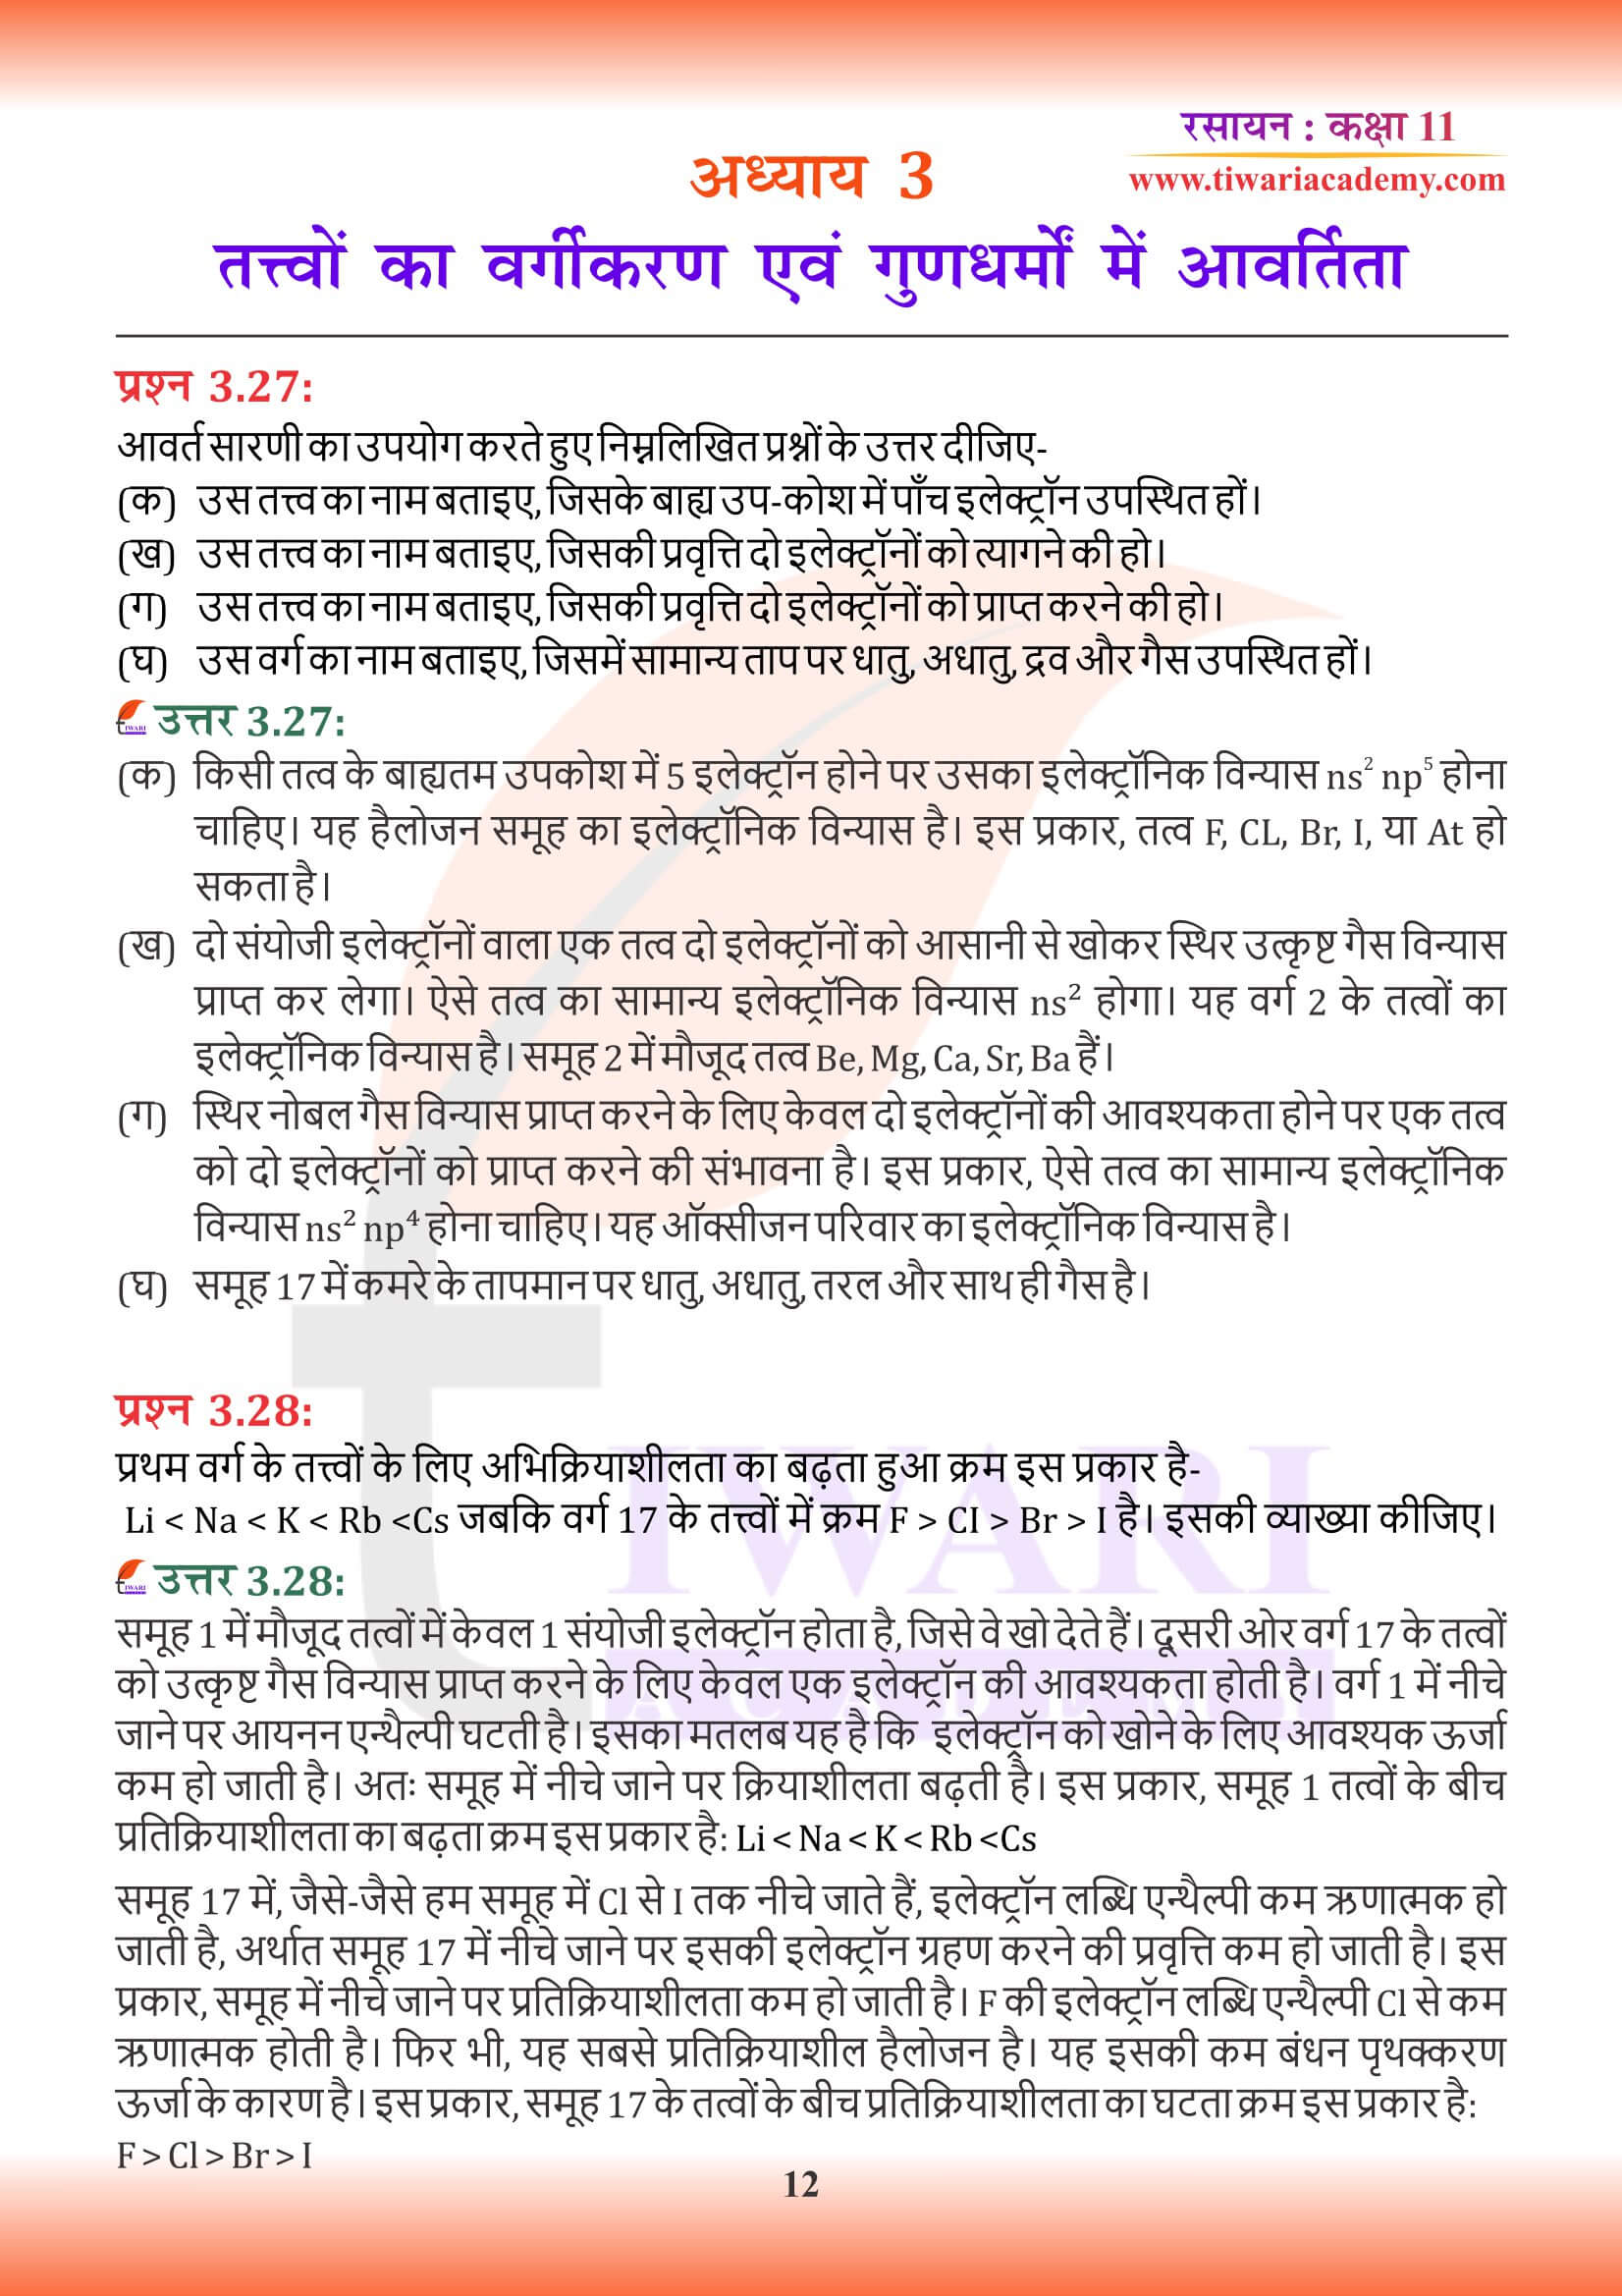 कक्षा 11 रसायन अध्याय 3 की गाइड हिंदी में